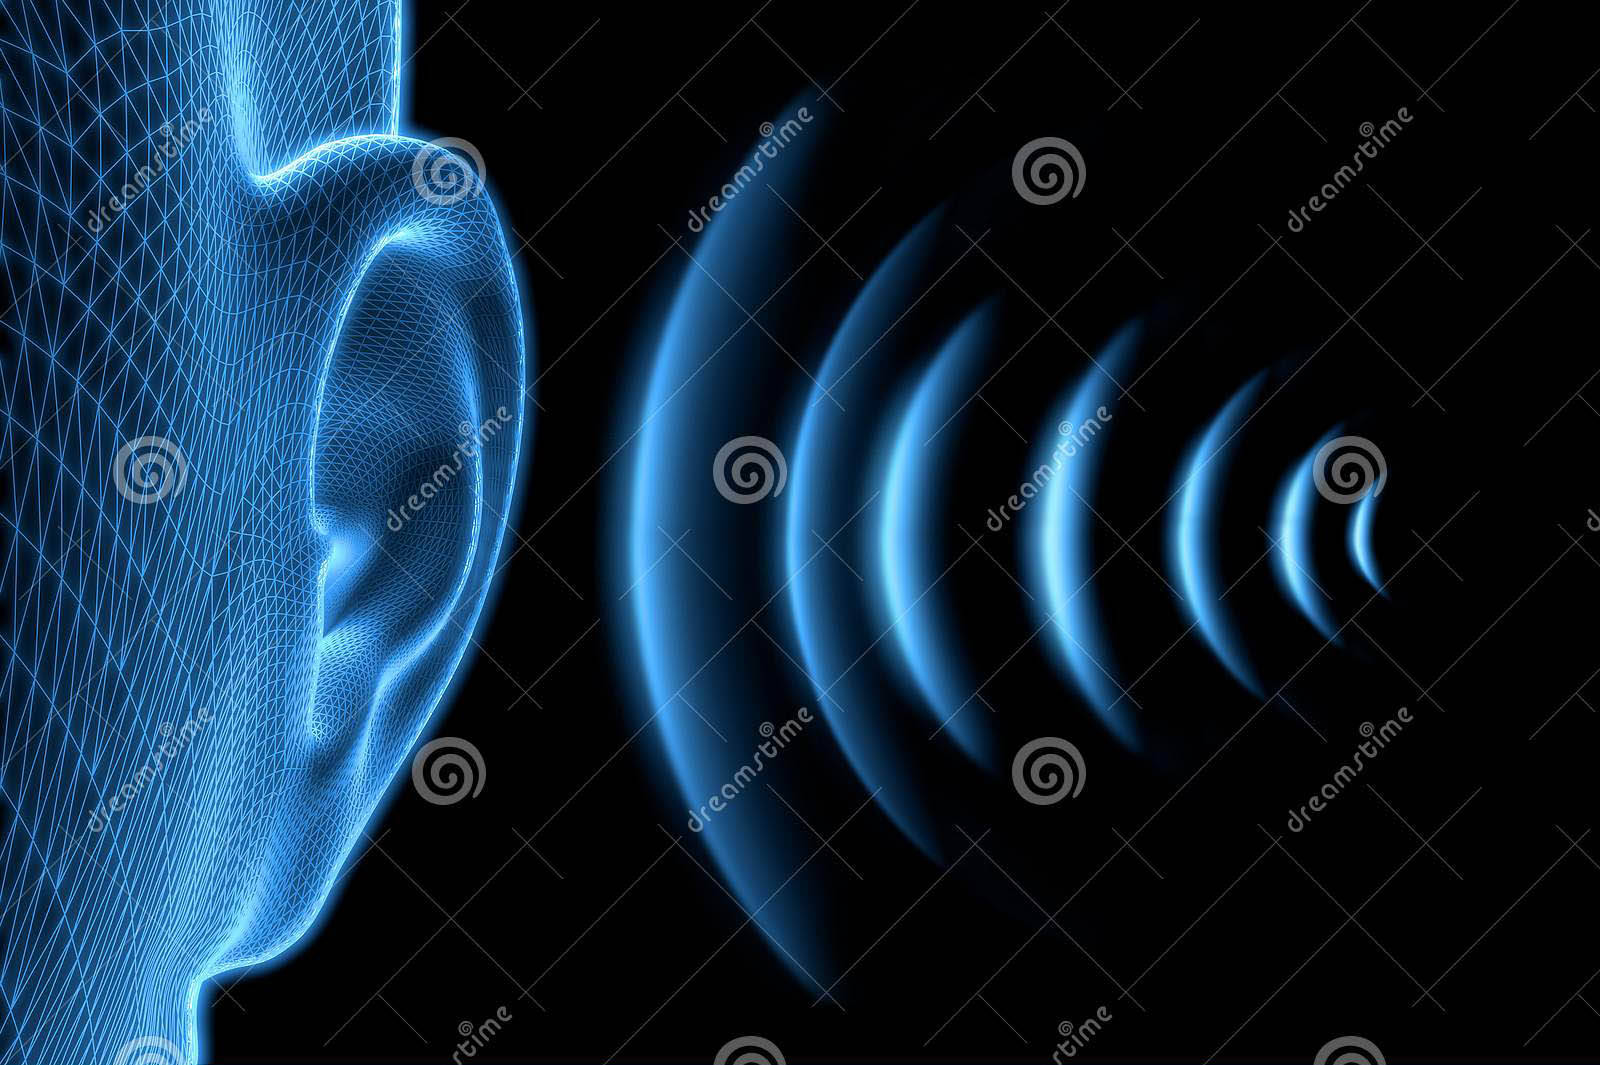 《科学进展》(science advances)期刊上的研究称,声波在介质中传播